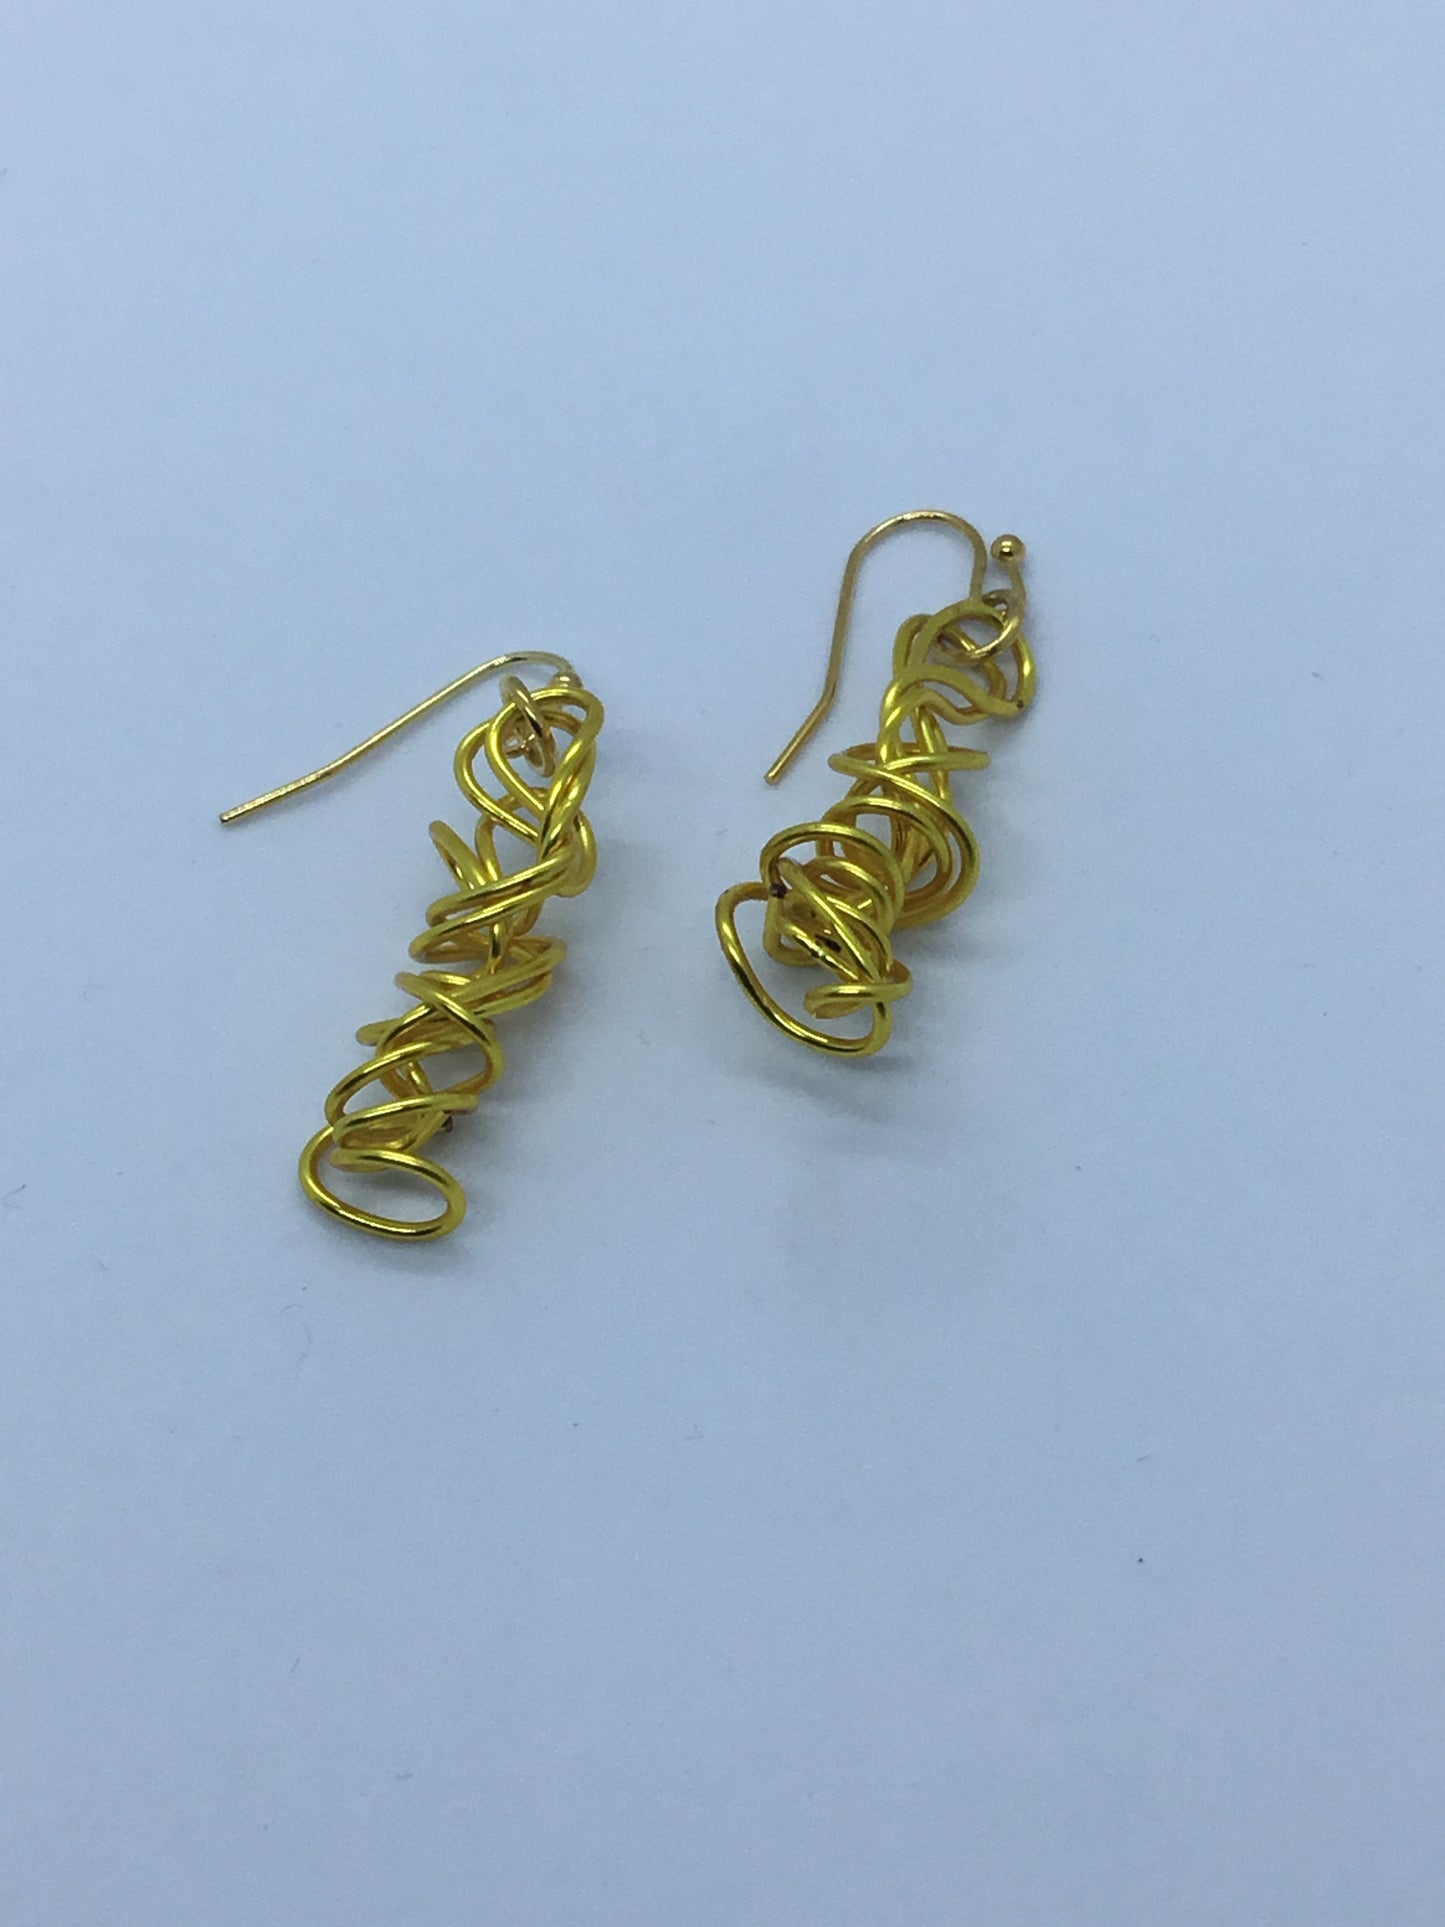 Wire tight twist earrings in gold wire